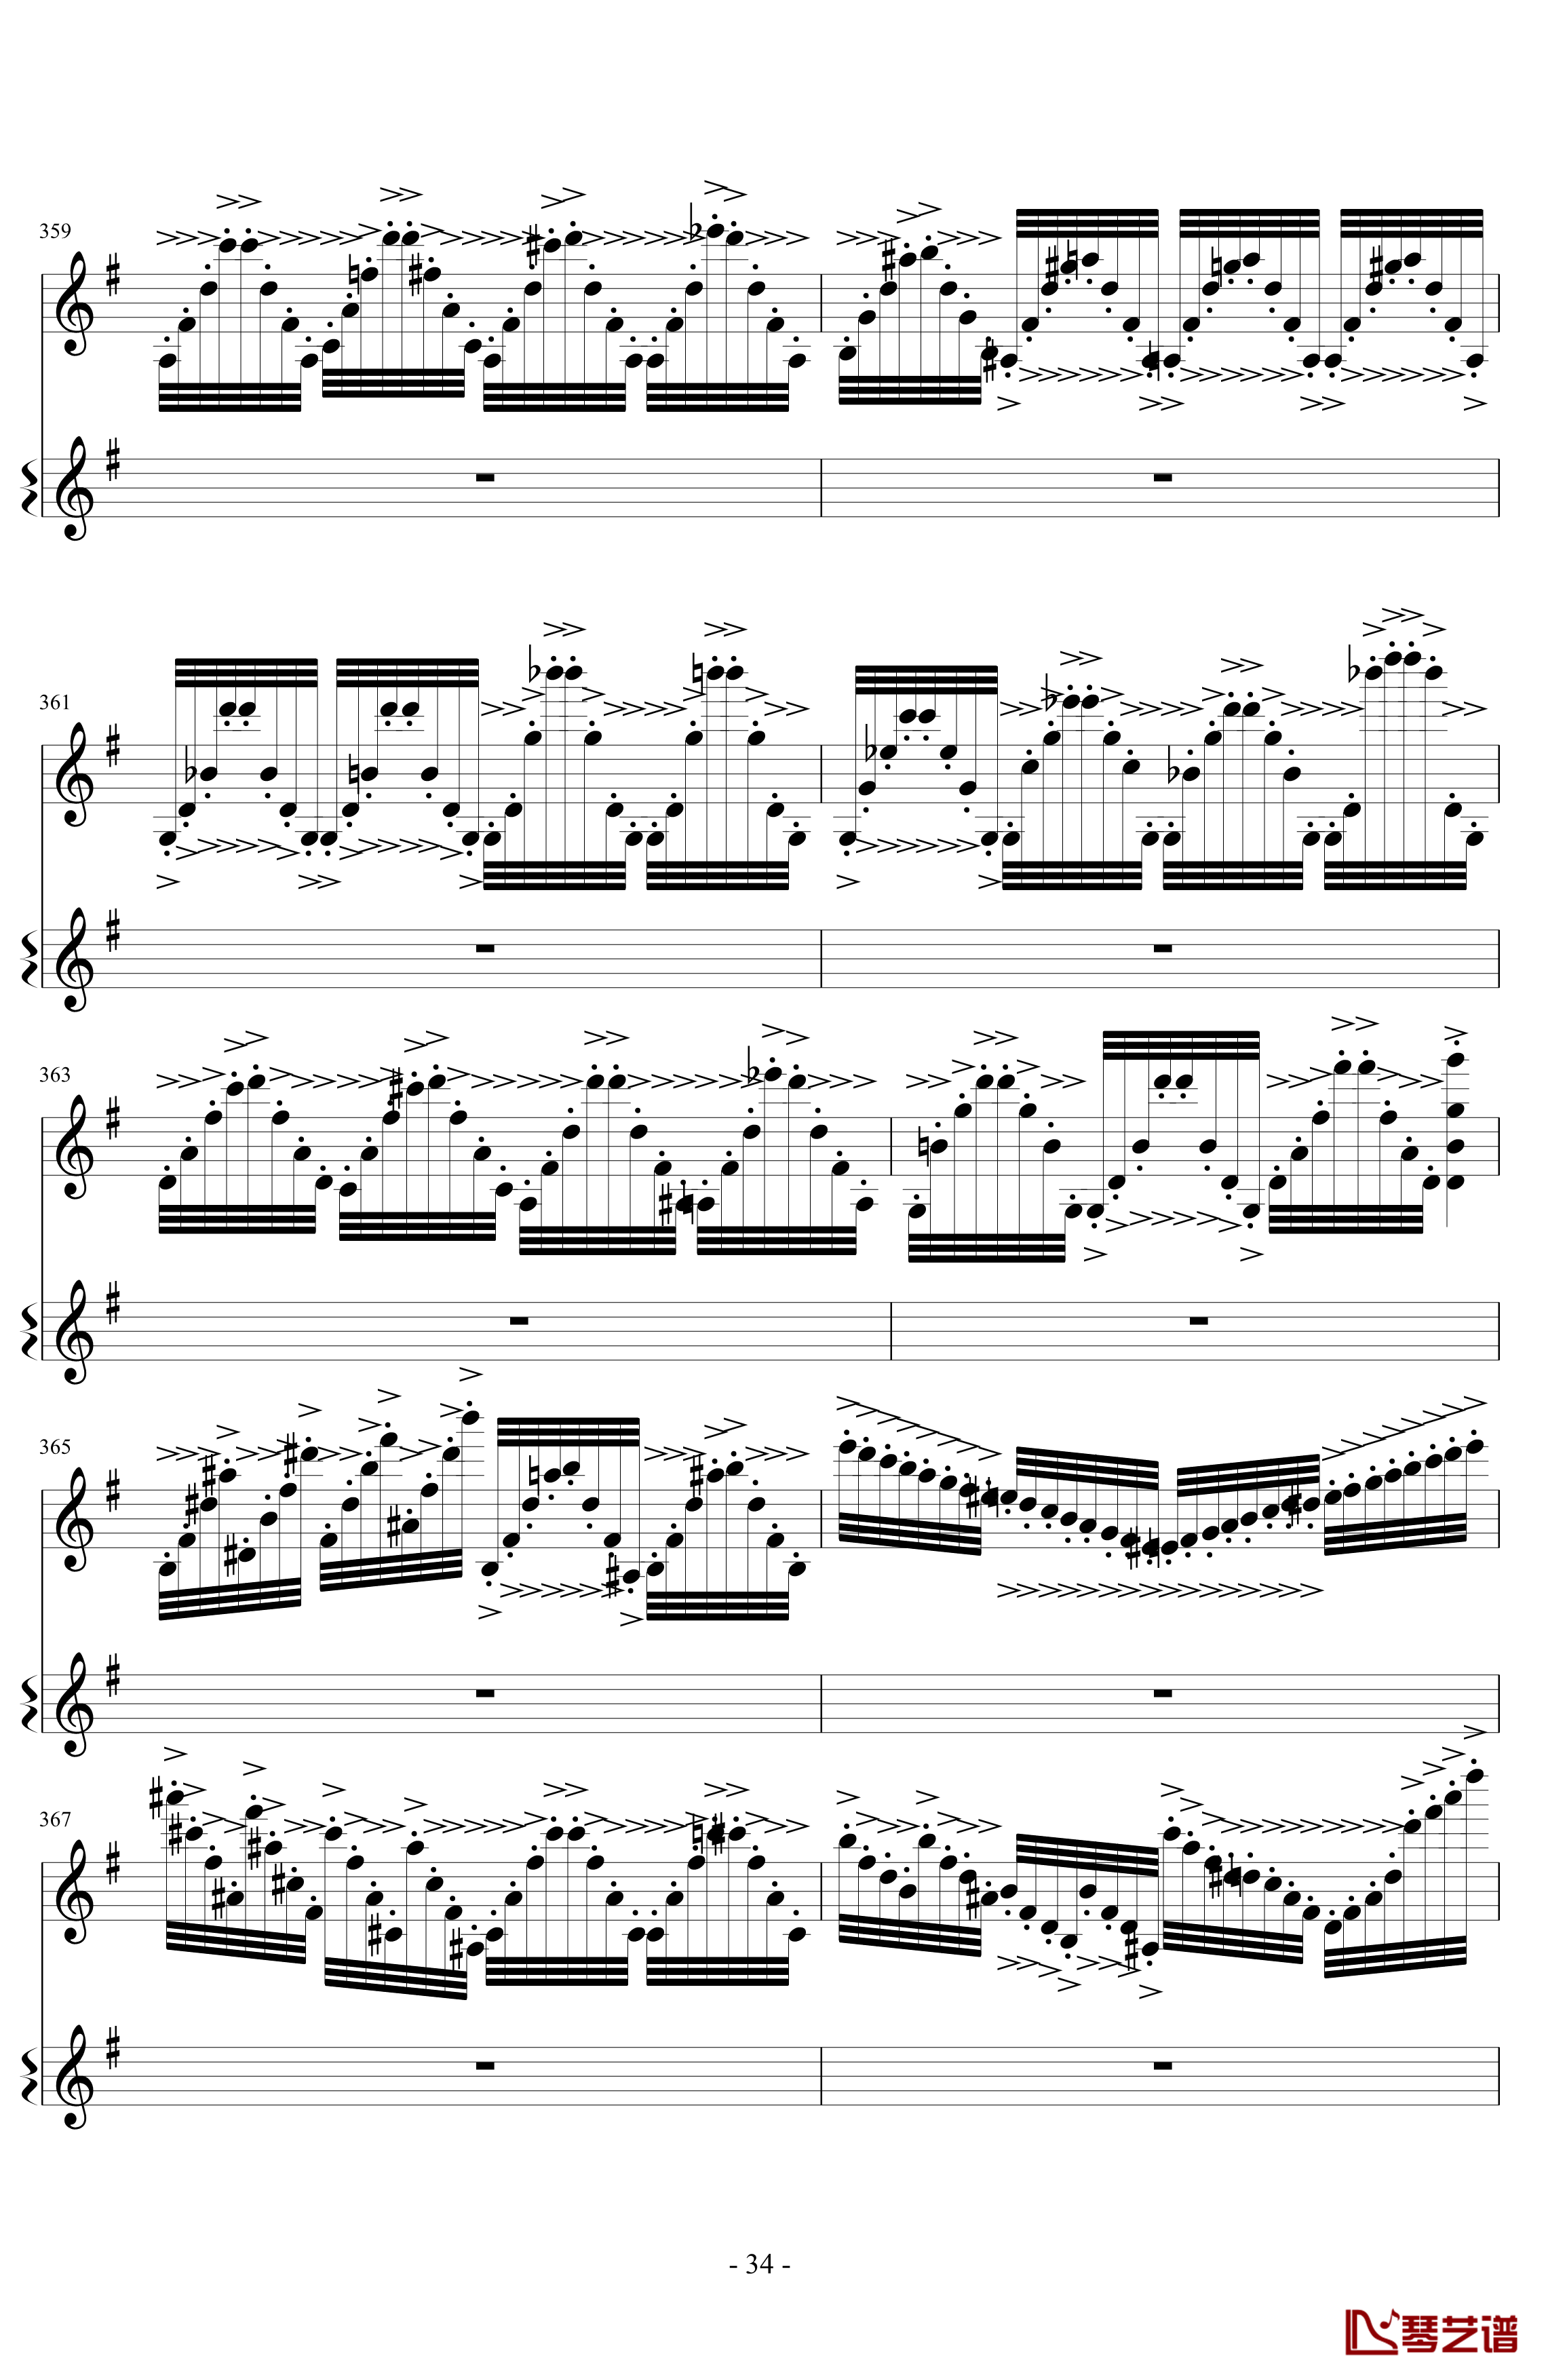 意大利国歌变奏曲钢琴谱-DXF34